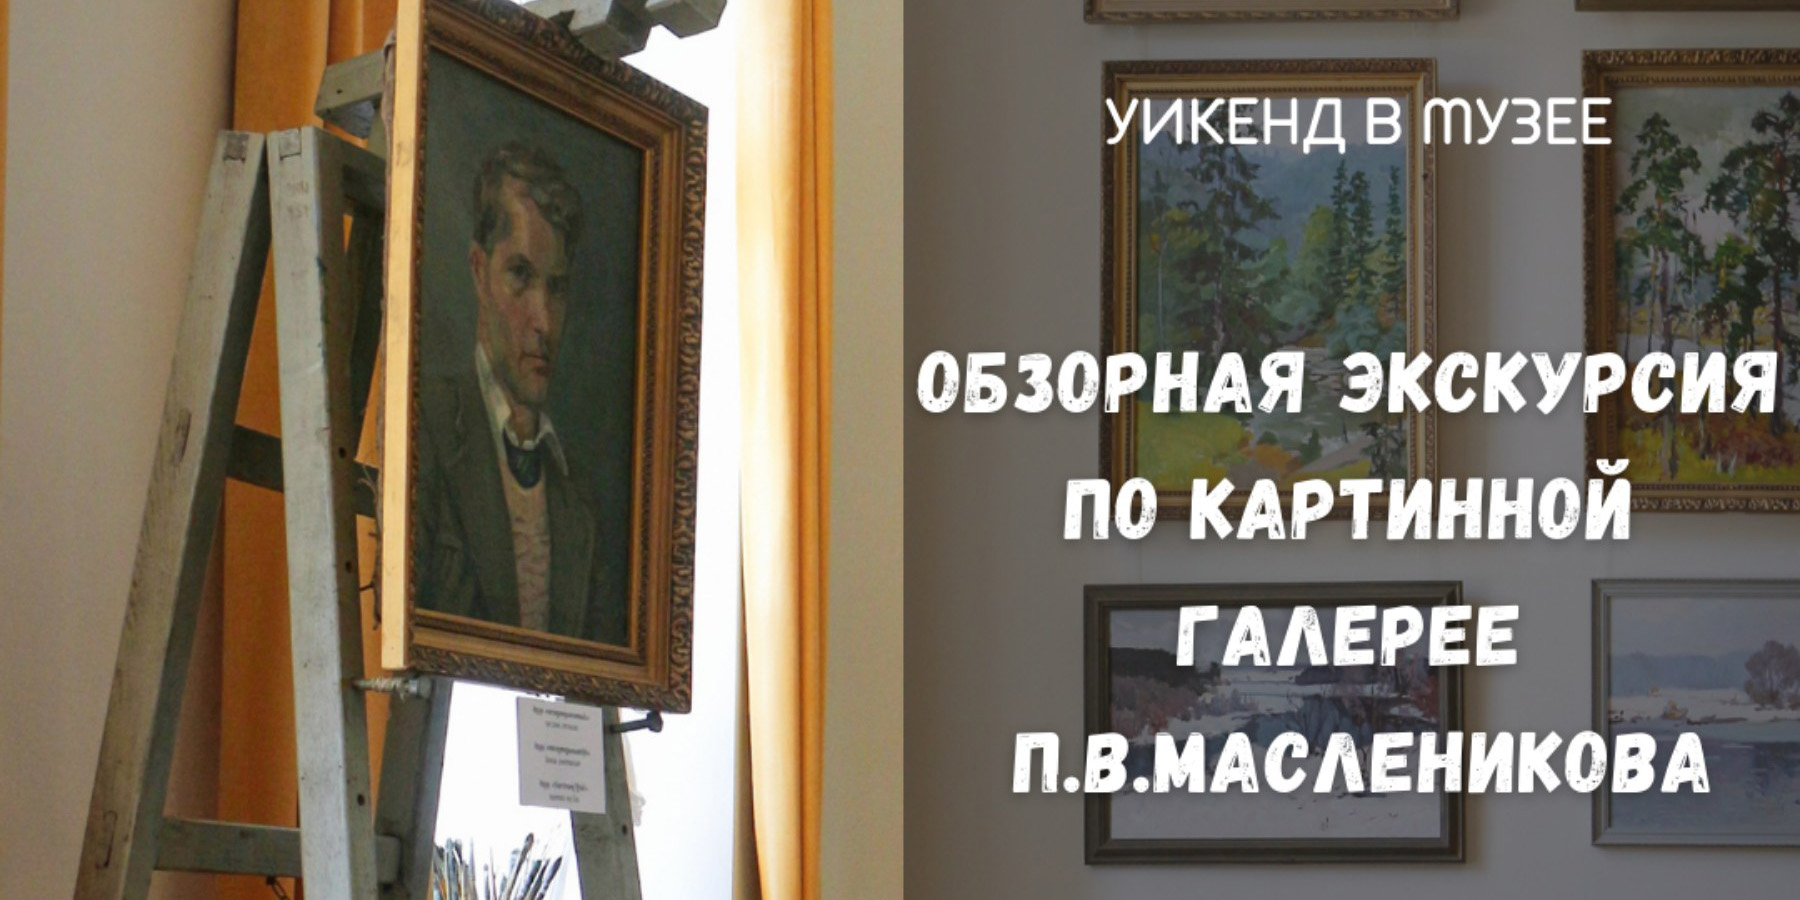 На экскурсию-лекцию по авторской картинной галерее П.В. Масленикова приглашают могилевчан 18 сентября